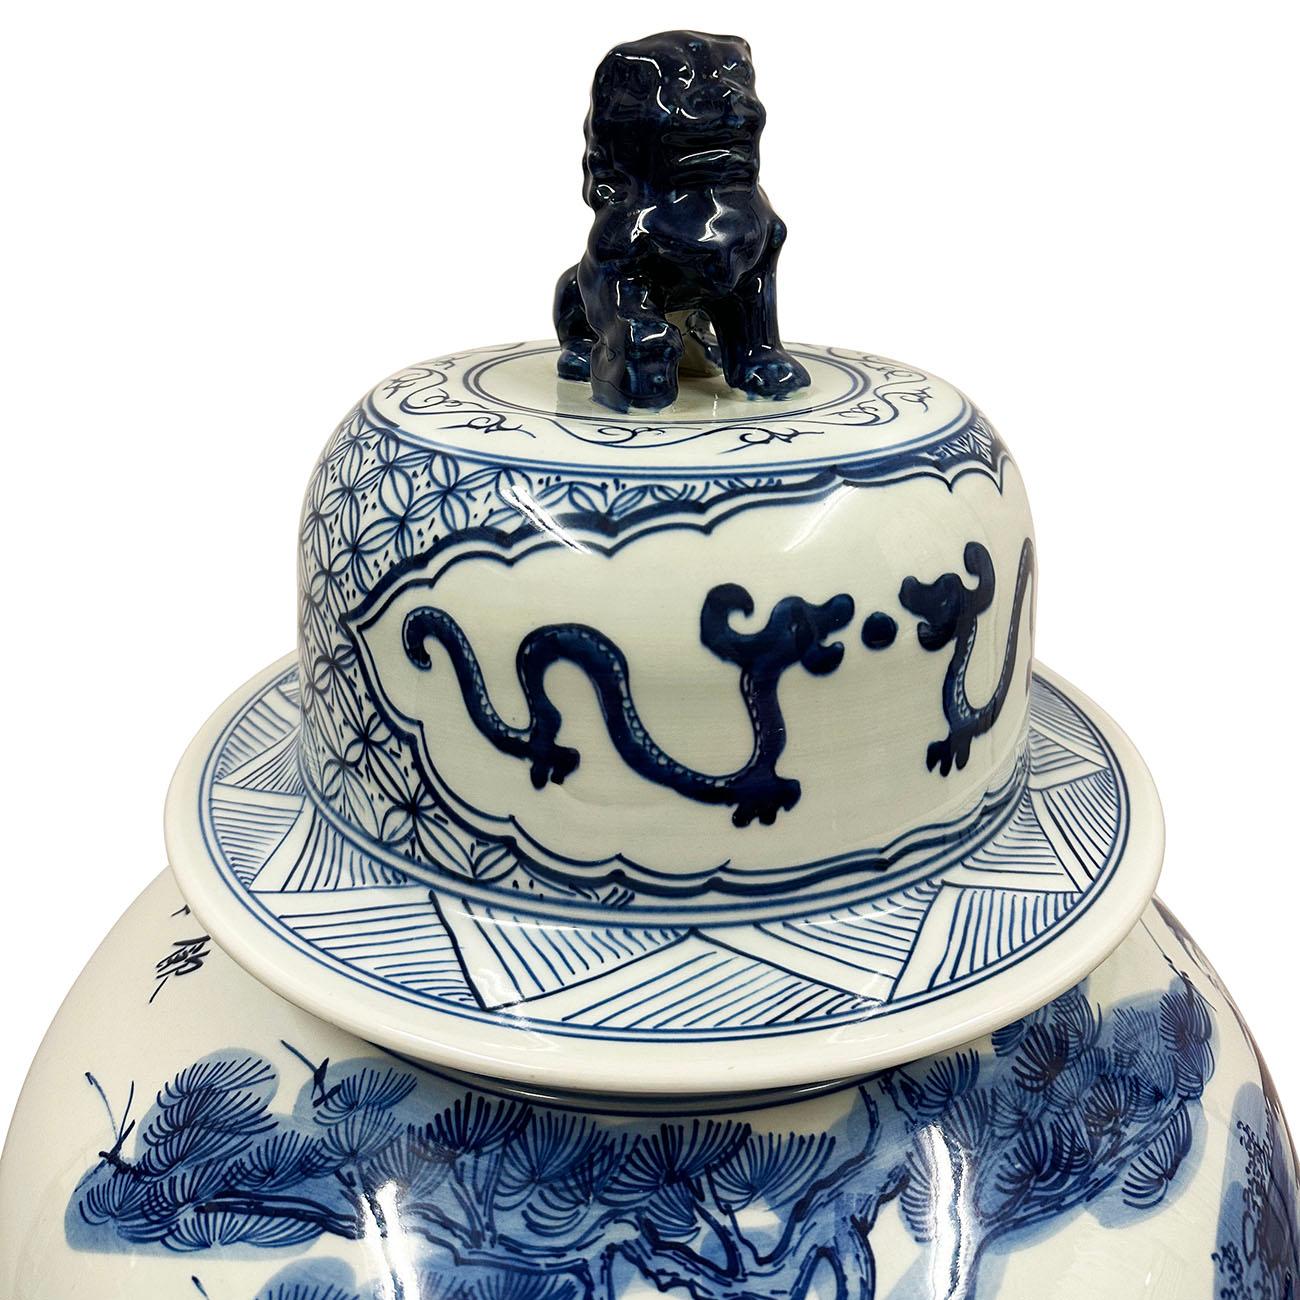 Ce magnifique pot à gingembre ancien en porcelaine chinoise bleue et blanche a été réalisé et peint à la main à partir de la célèbre porcelaine chinoise bleue et blanche. Il s'agit d'une peinture de Youqiu datant de la dynastie Ming, aujourd'hui